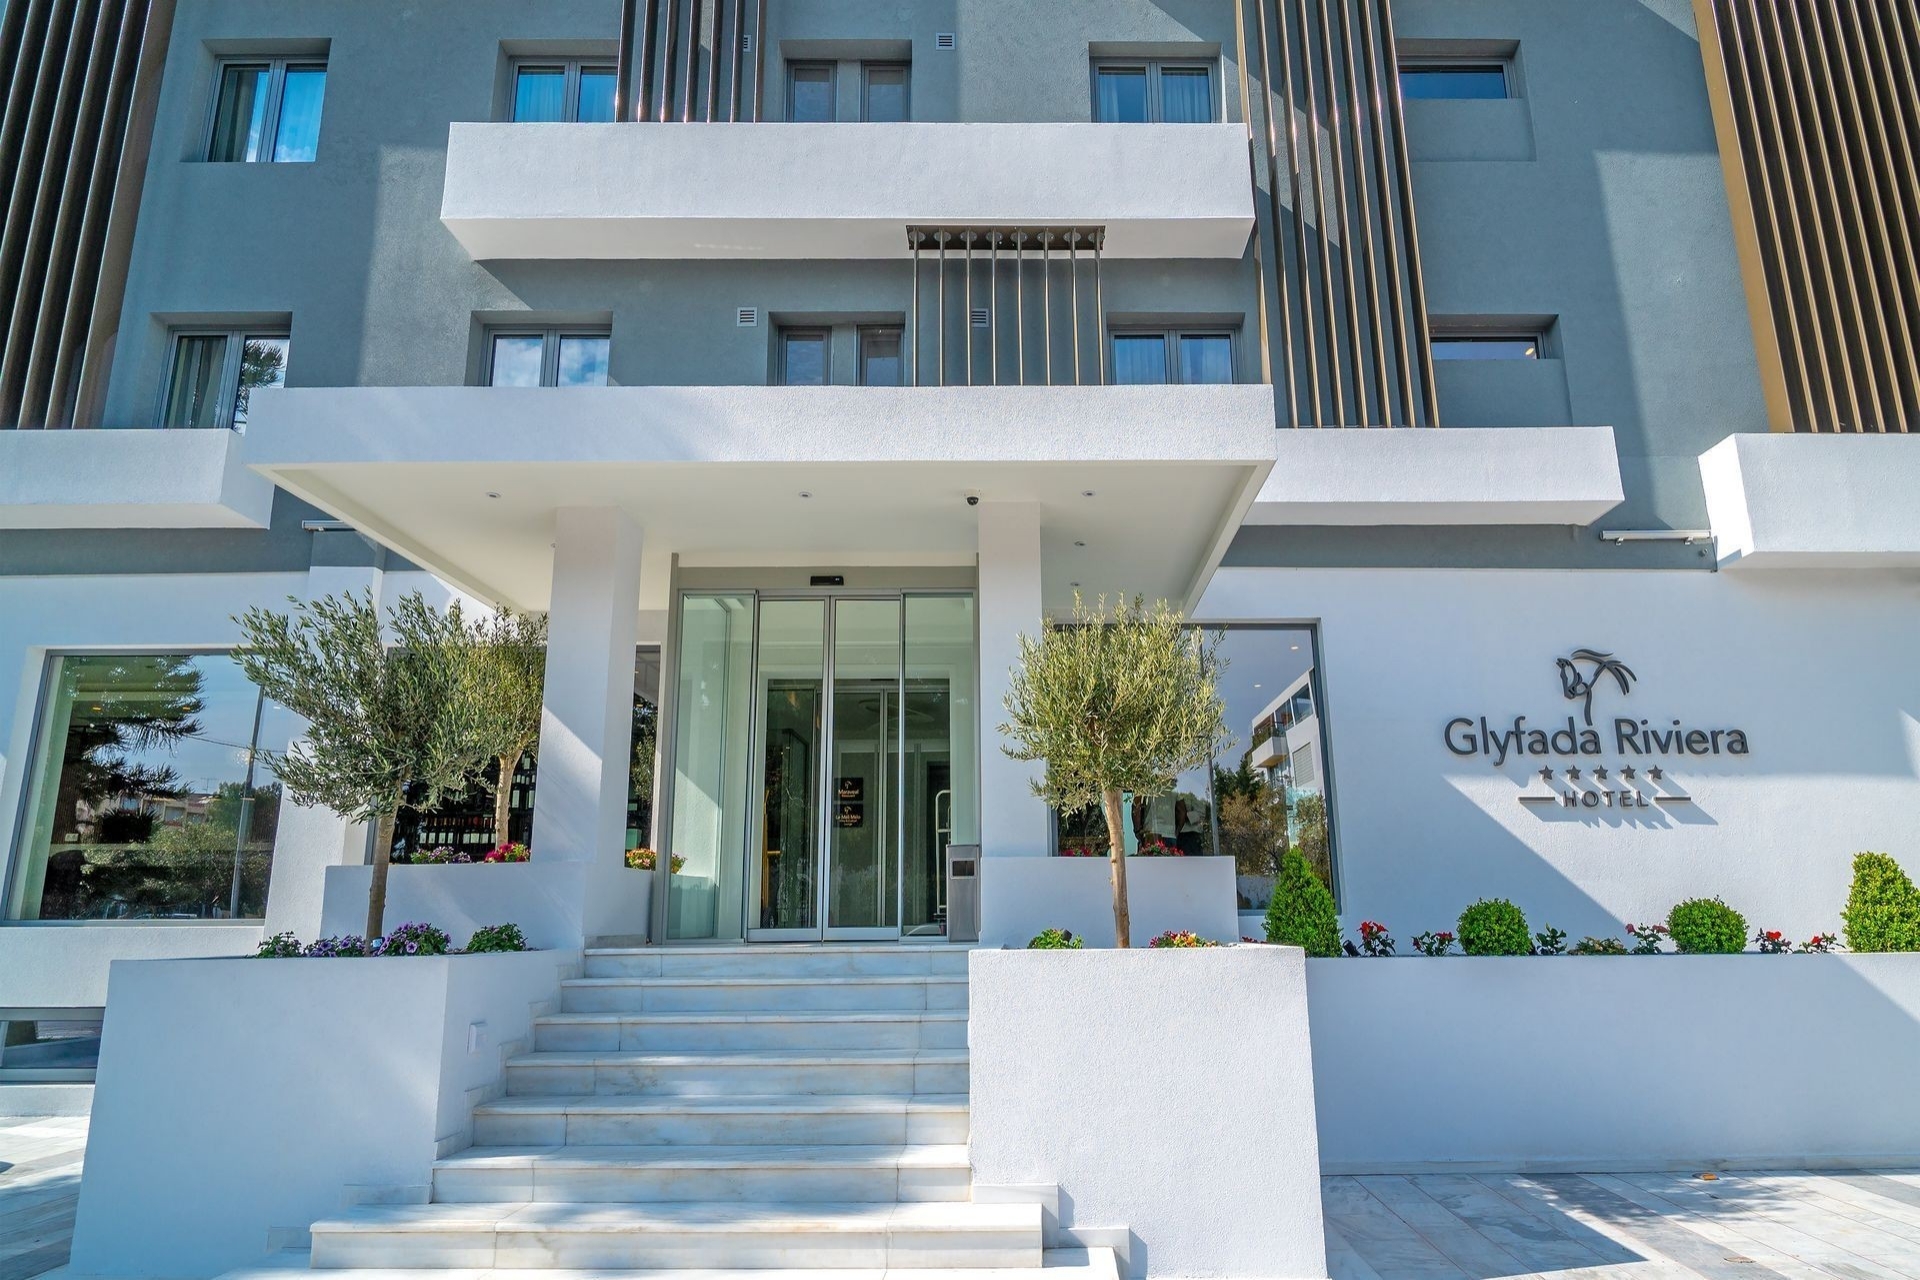 5* Glyfada Riviera Hotel - Γλυφάδα, Αθήνα ✦ 2 Ημέρες (1 Διανυκτέρευση) ✦ 2 άτομα ✦ 2 ✦ έως 30/09/2022 ✦ Free WiFi